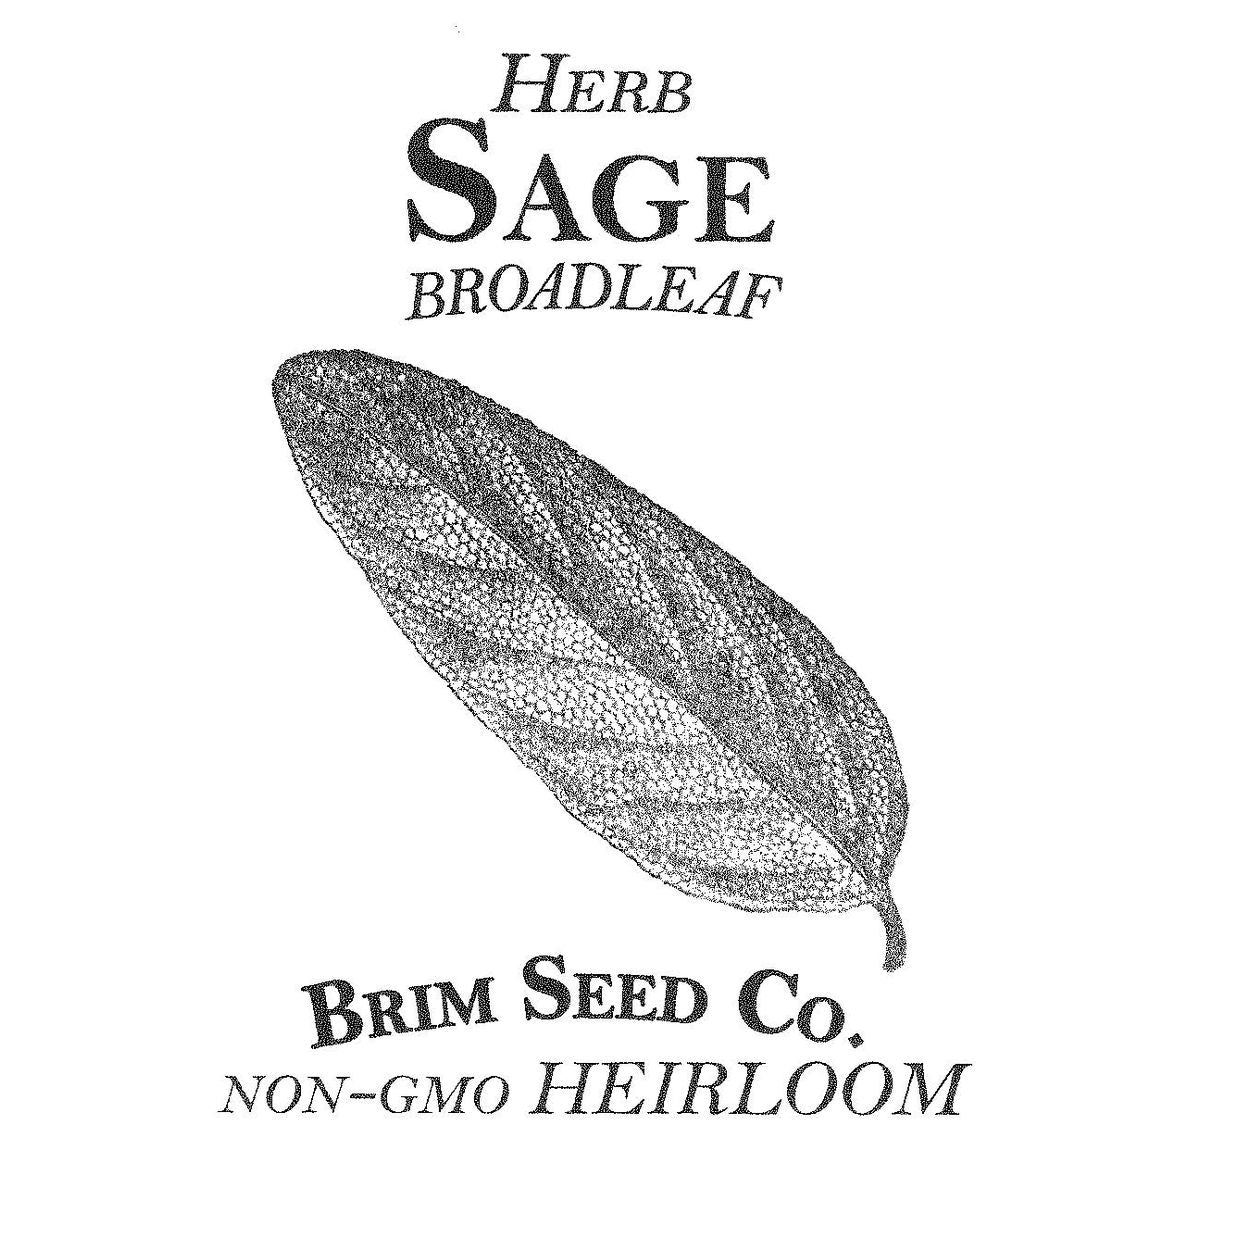 Brim Seed Co. - Broadleaf Sage Herb Heirloom Seed